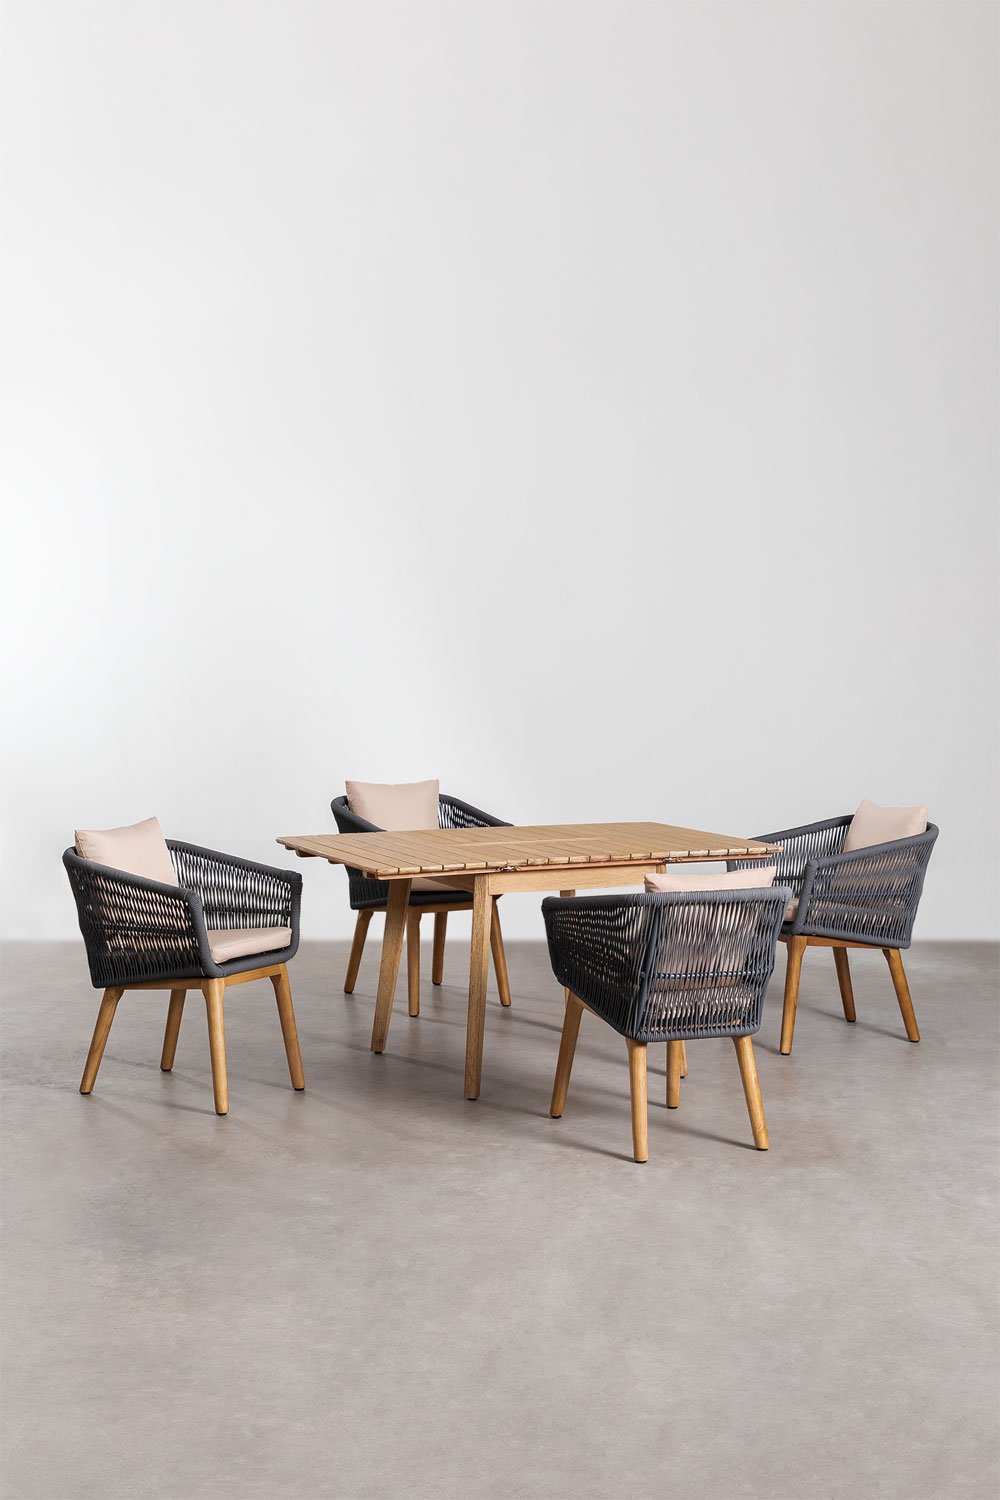 Houten uitschuifbare tafelset (90-150x90 cm) Naele en 4 Barker eetkamerstoelen, galerij beeld 1